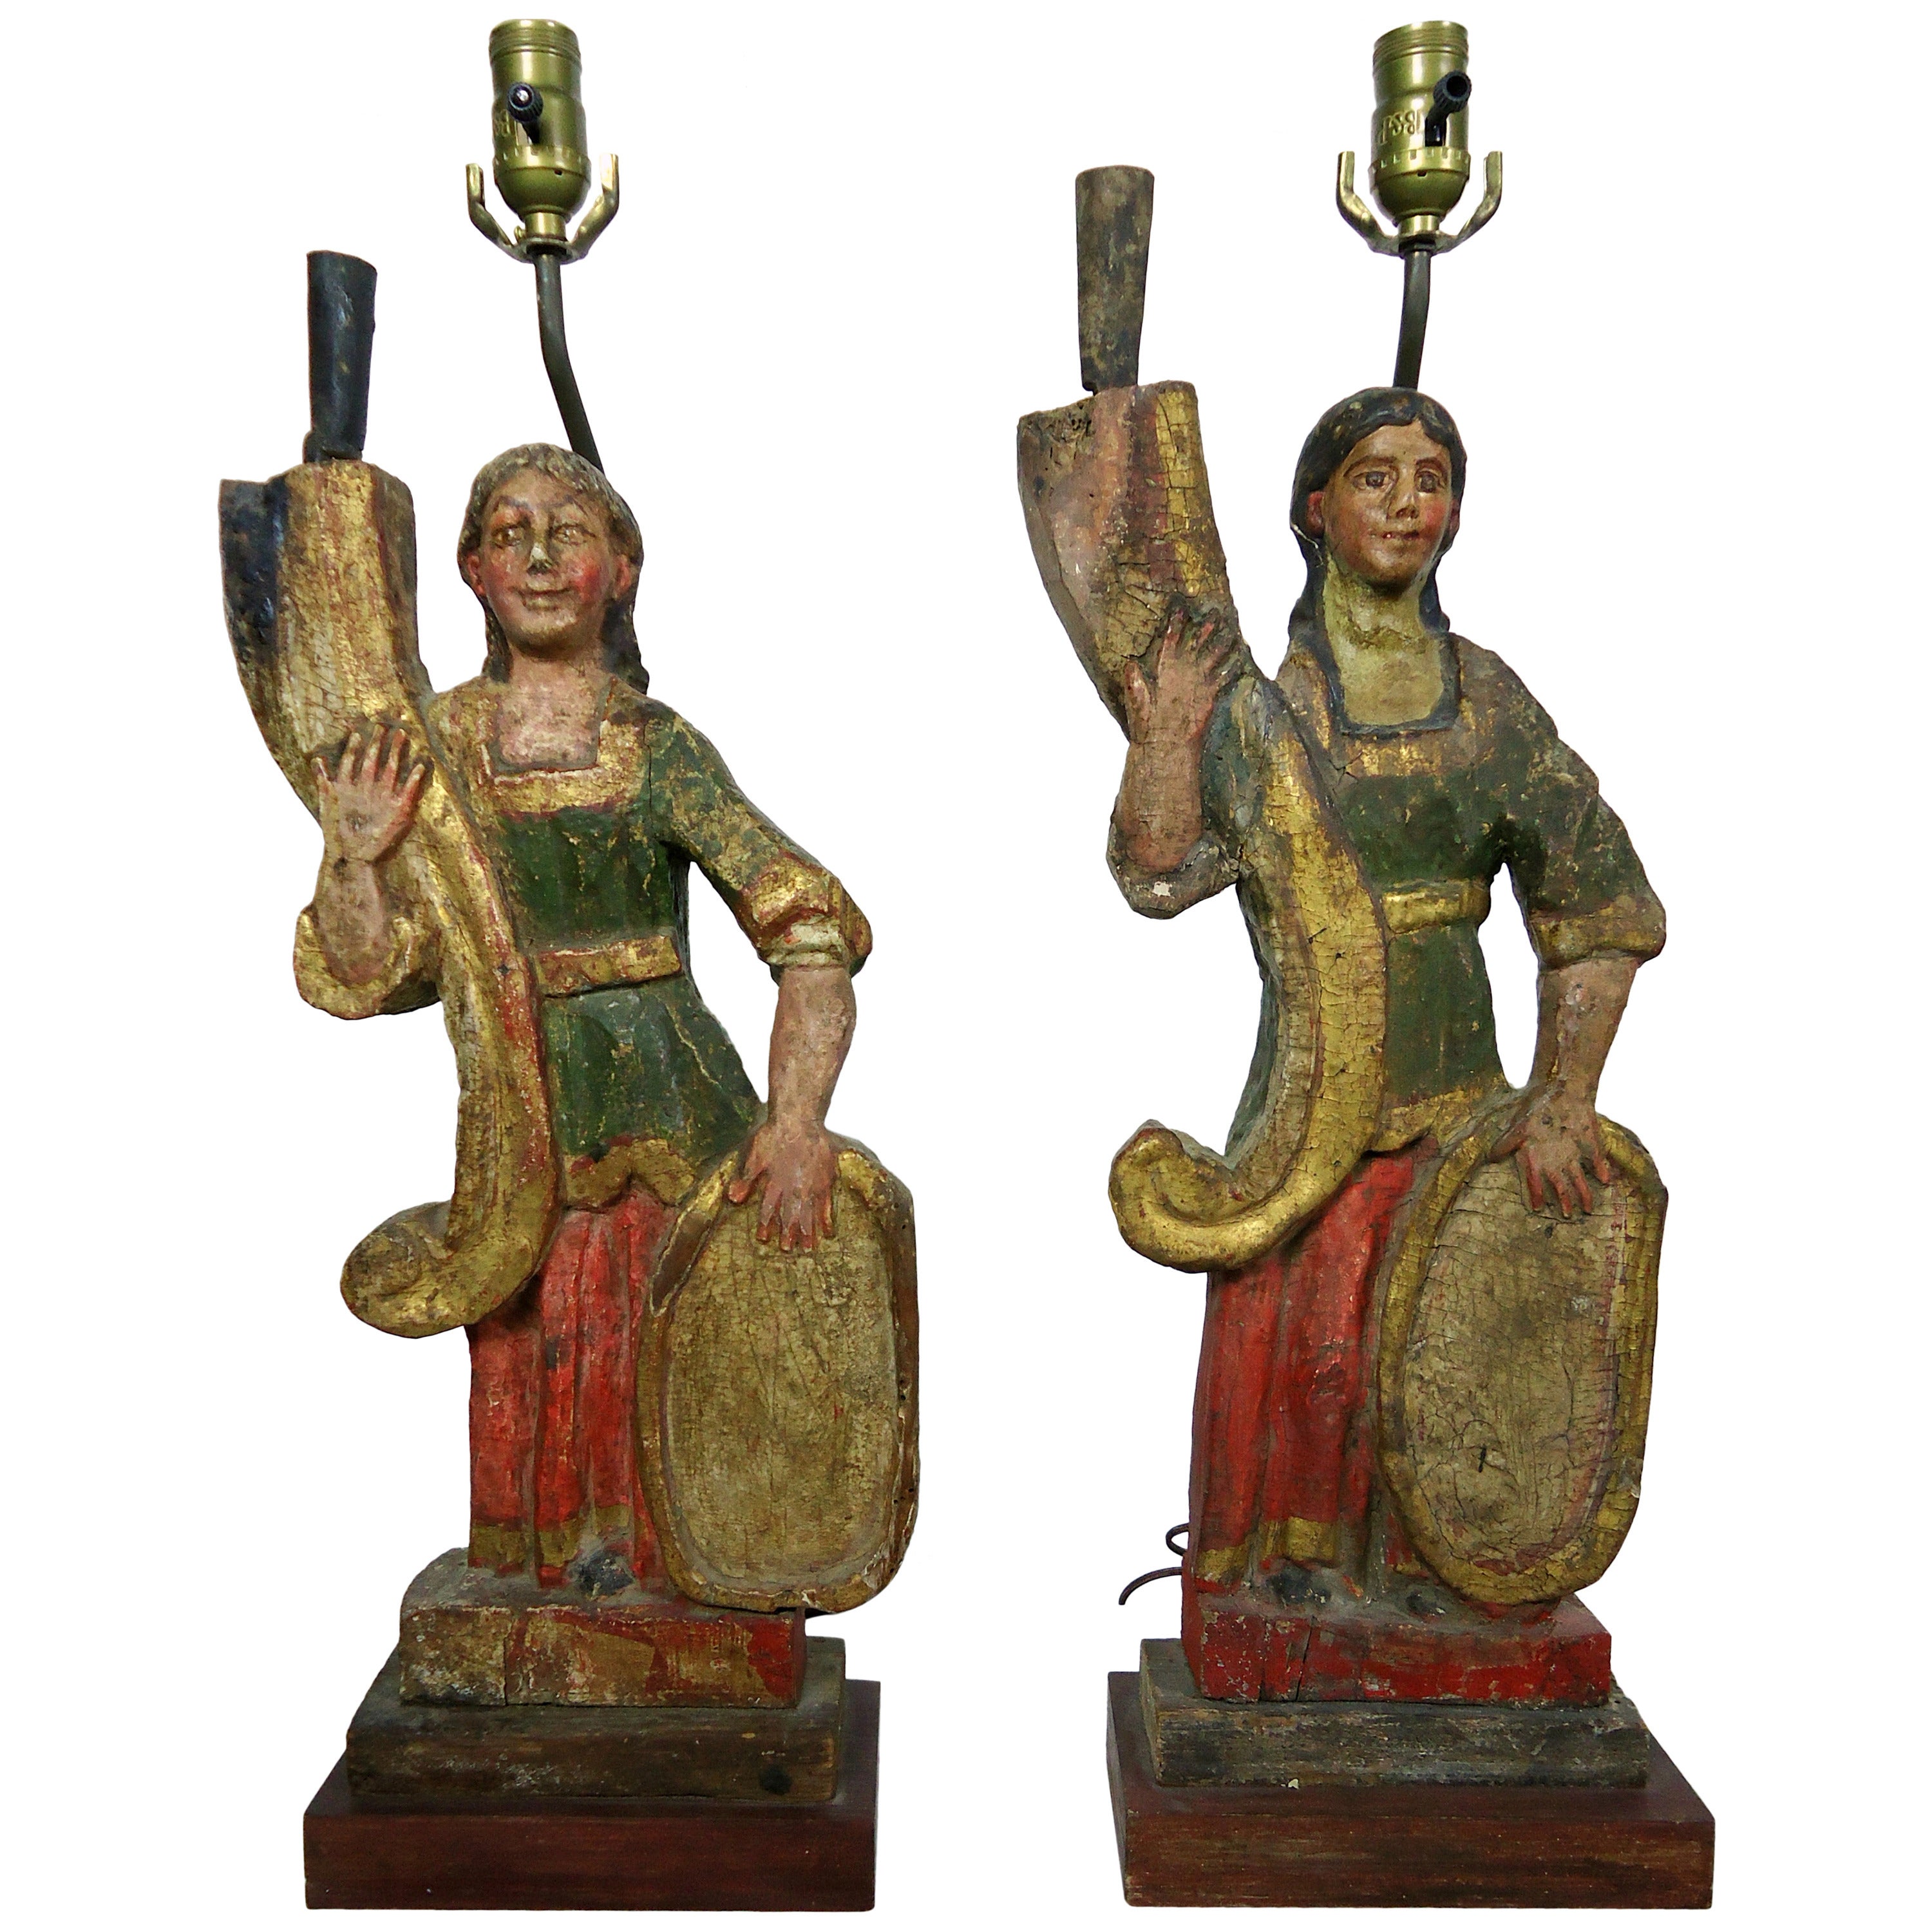 Geschnitzte italienische polychrome Kandelaber-Tischlampen aus dem 18. bis 19. Jahrhundert